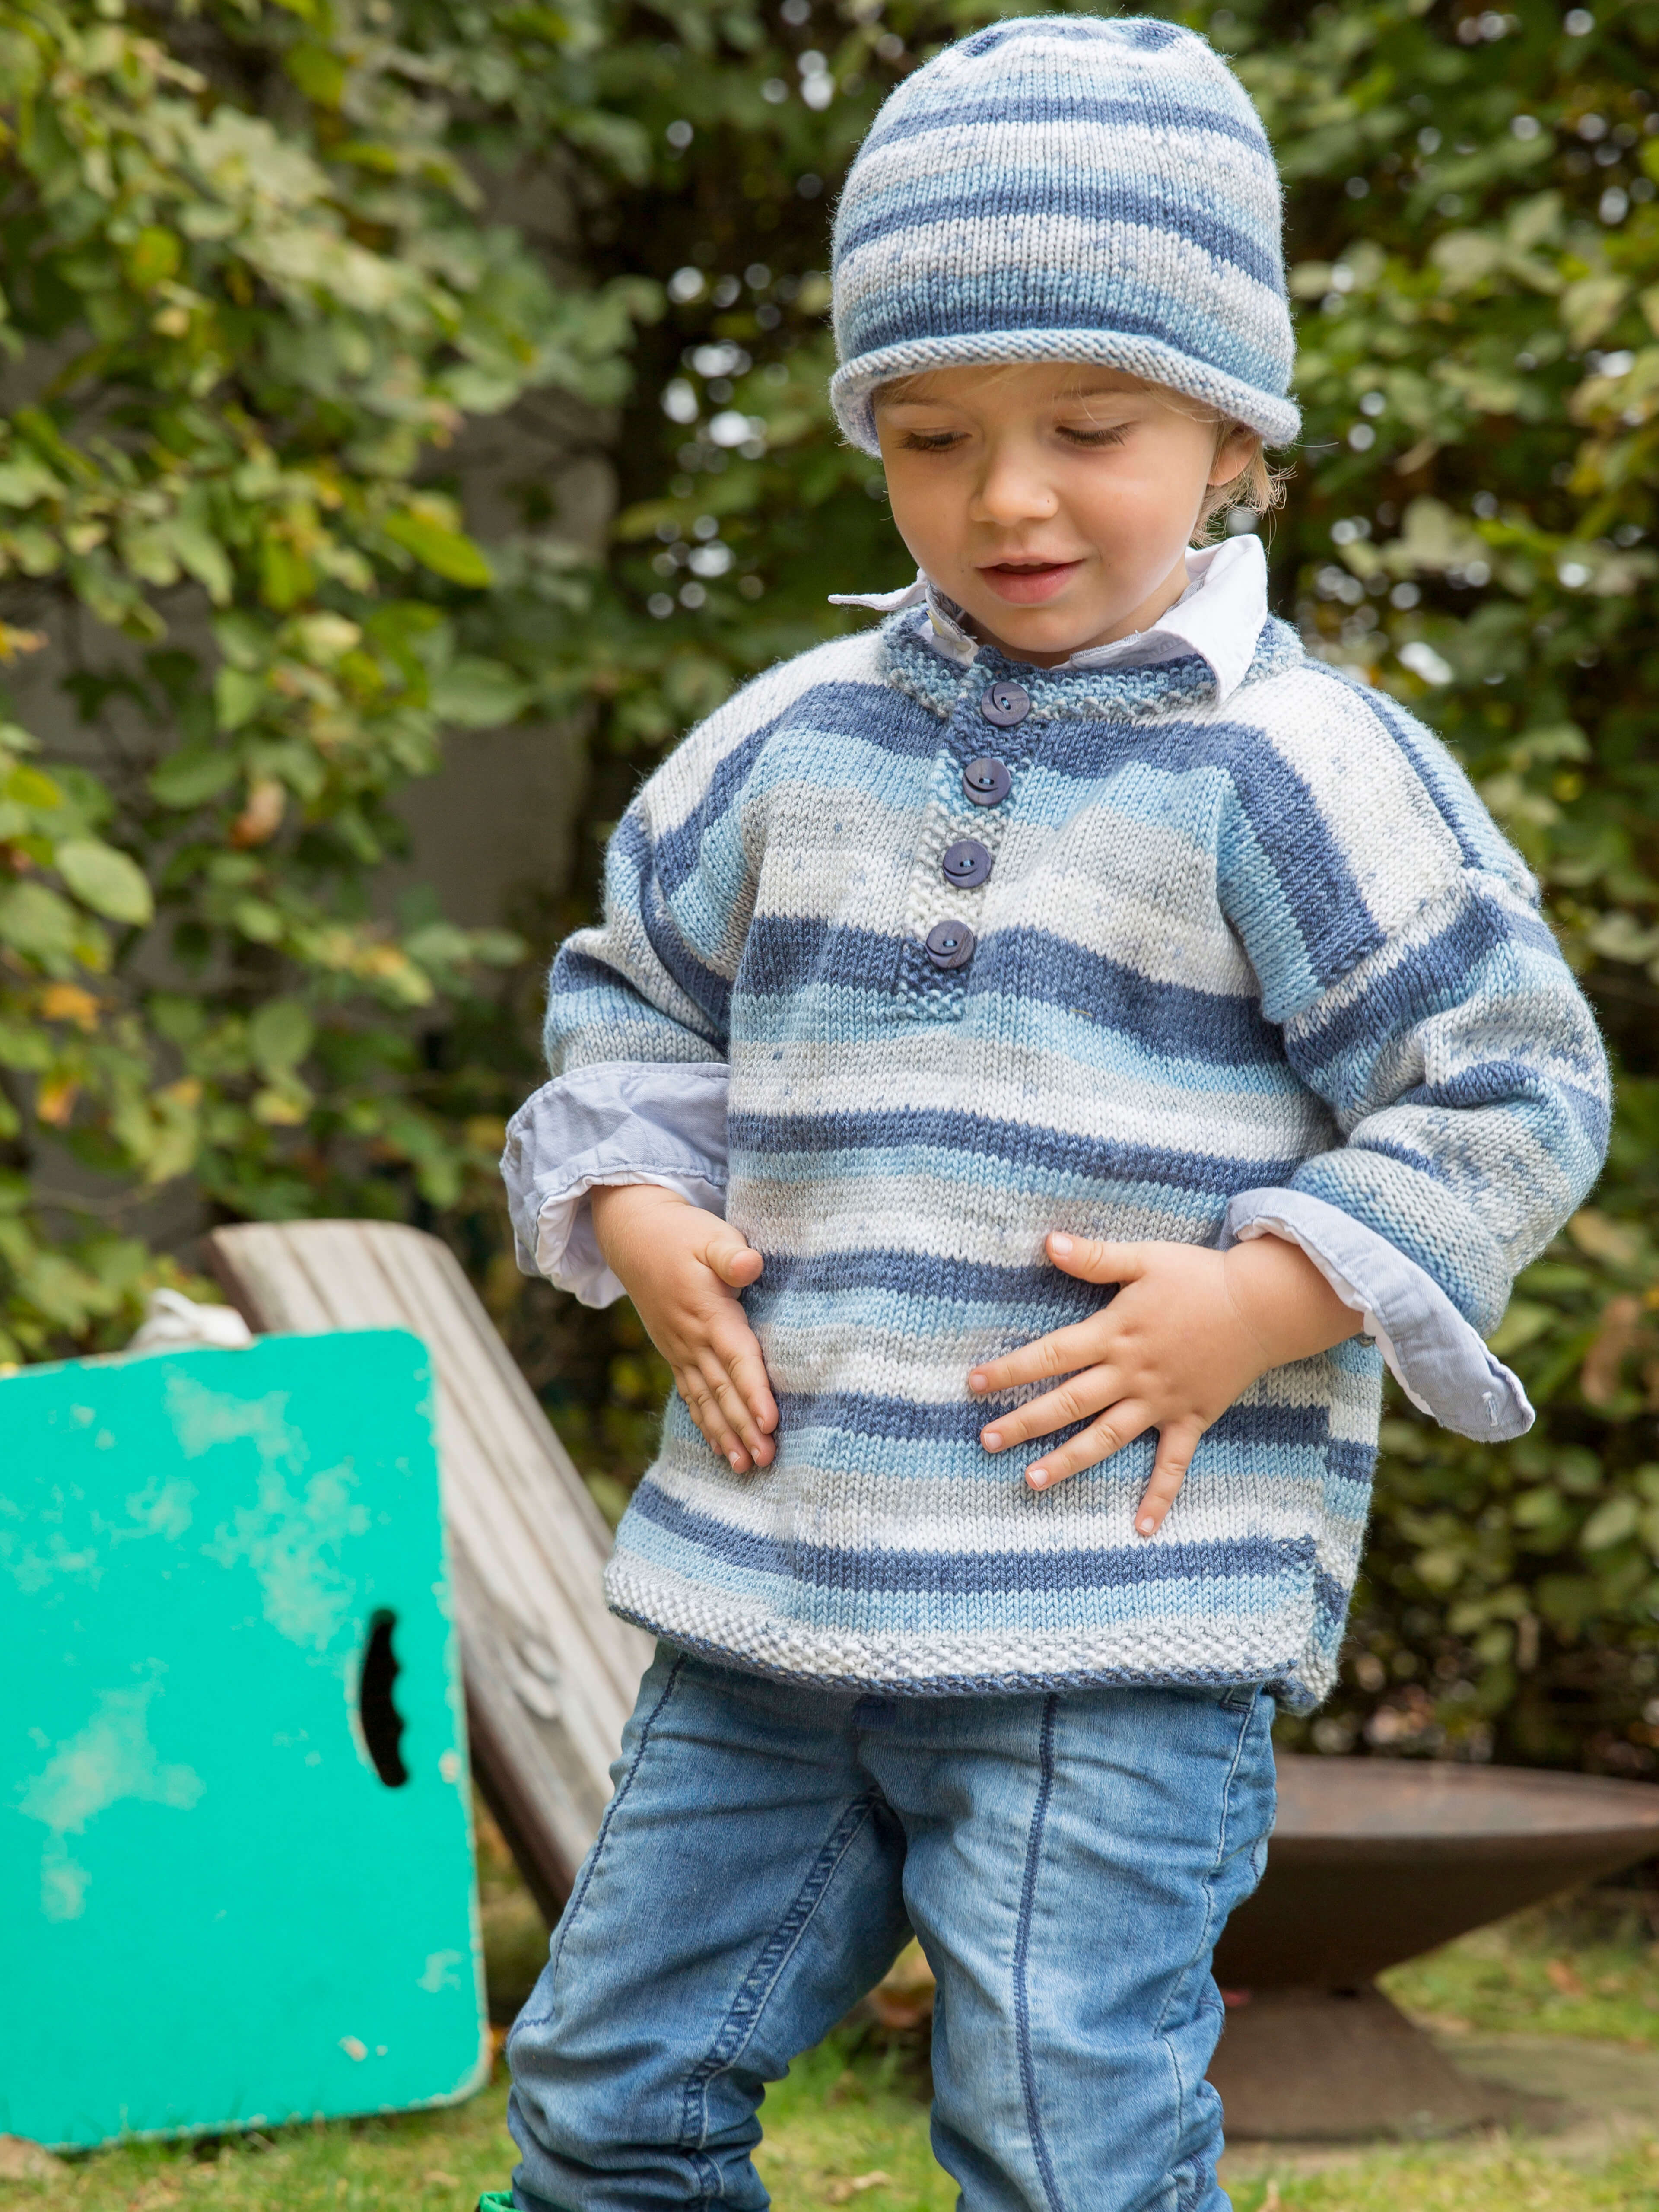 kleiner Junge spielend im Garten mit Pulli und passender Mütze